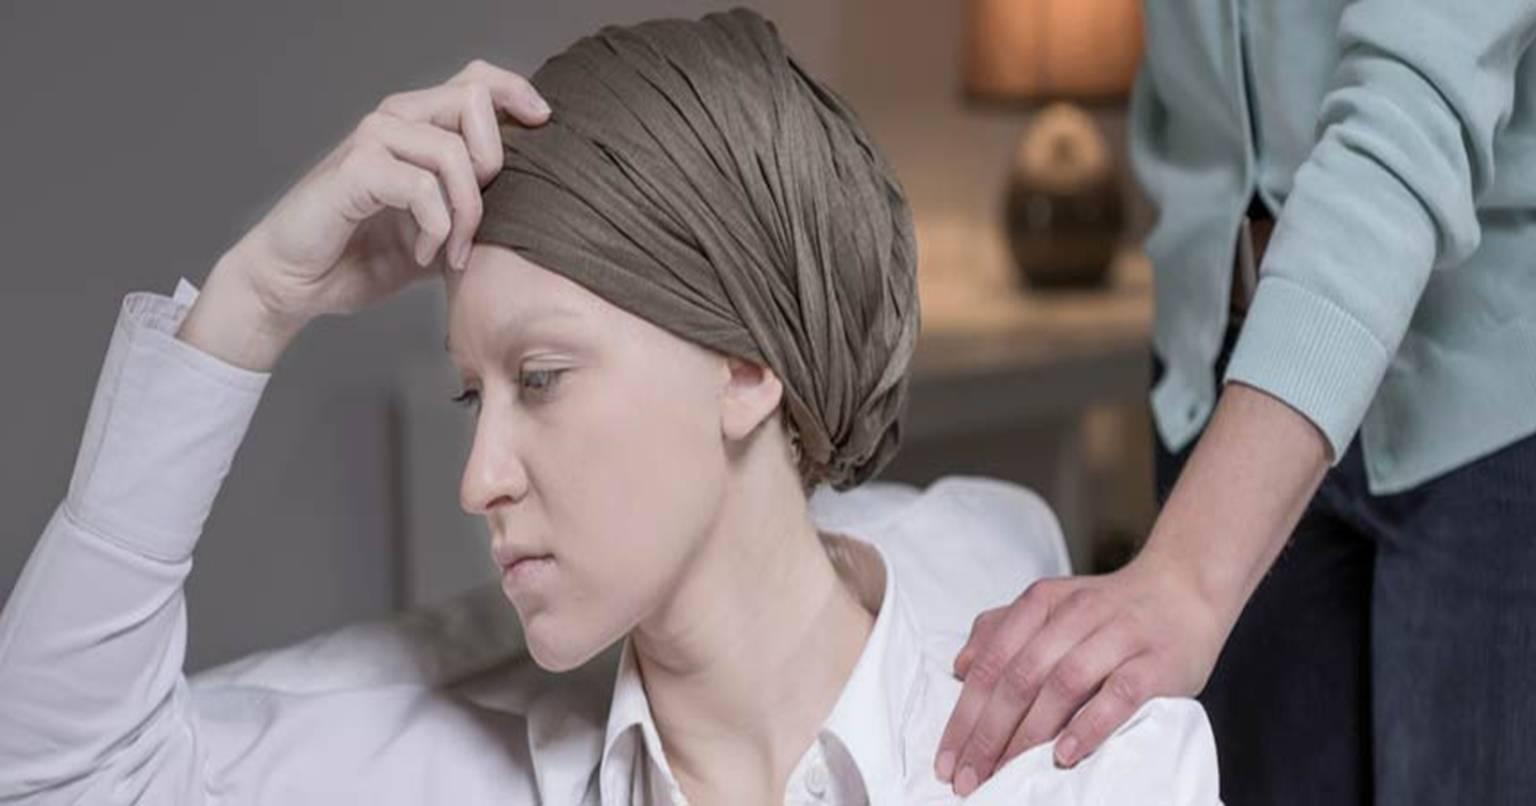 अब कैंसर के इलाज के दौरान ना घबराएं…क्योंकि आ गई है “कूलिंग कैप”, जो आपके बाल झड़ने से रोकेगी